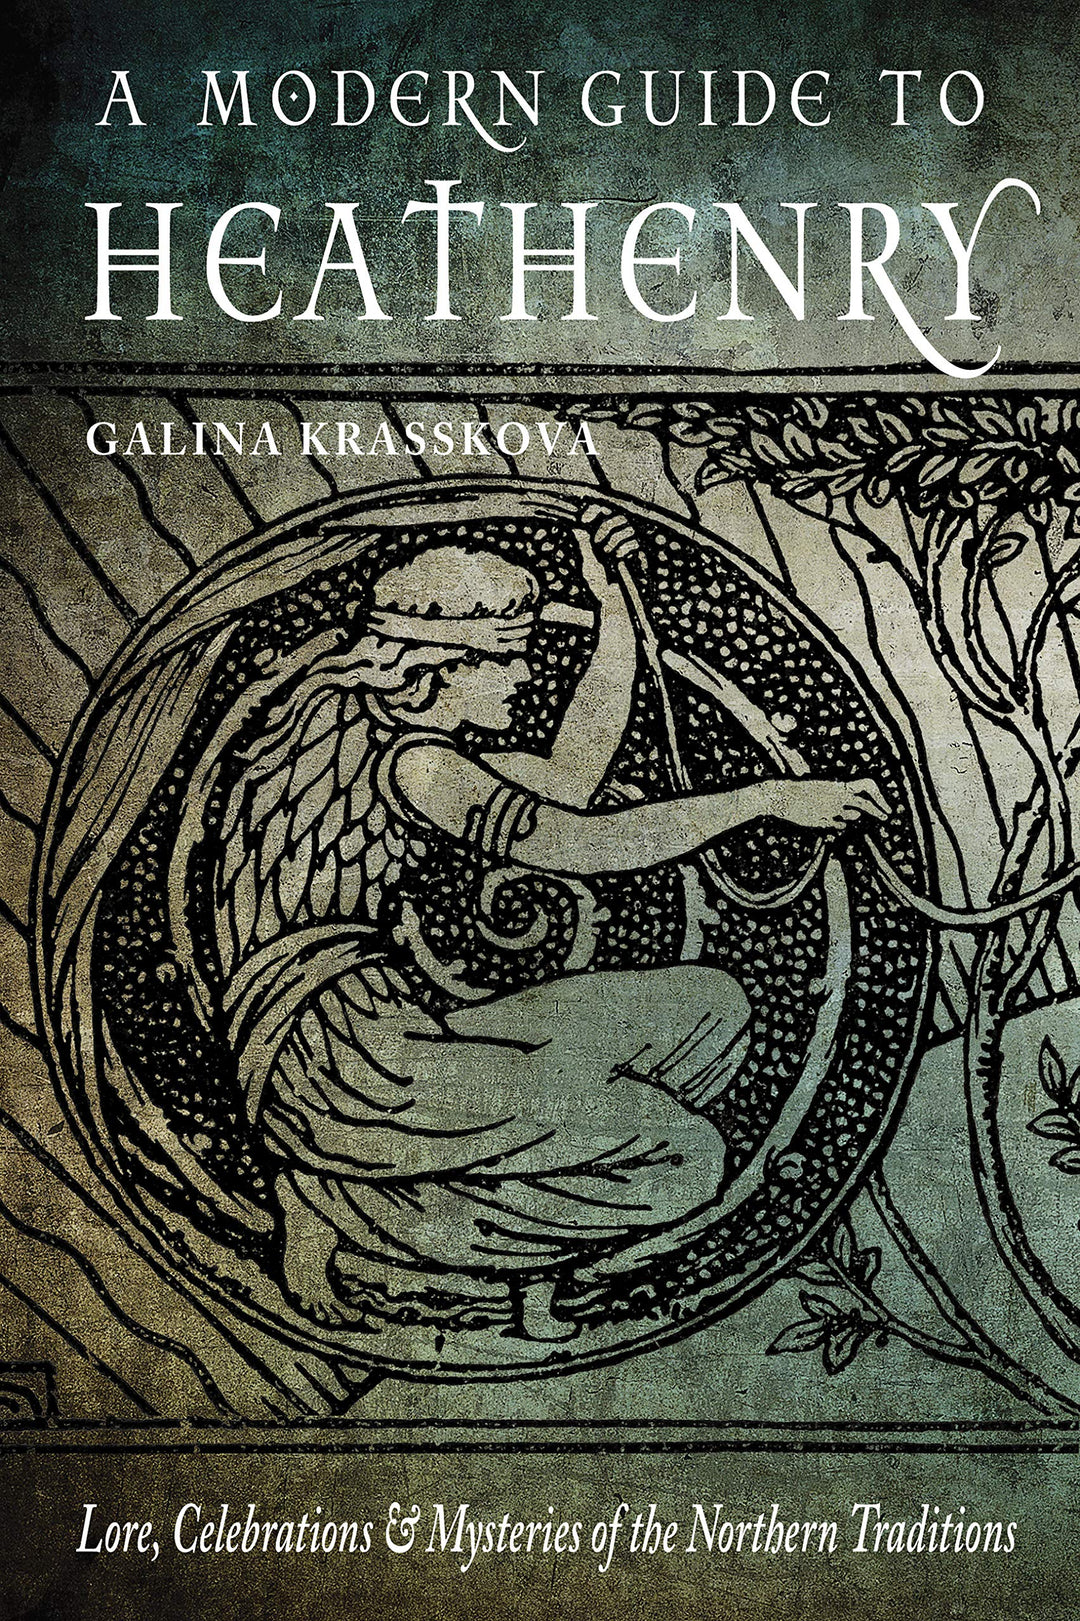 A Modern Guide to Heathenry by Galina Krasskova